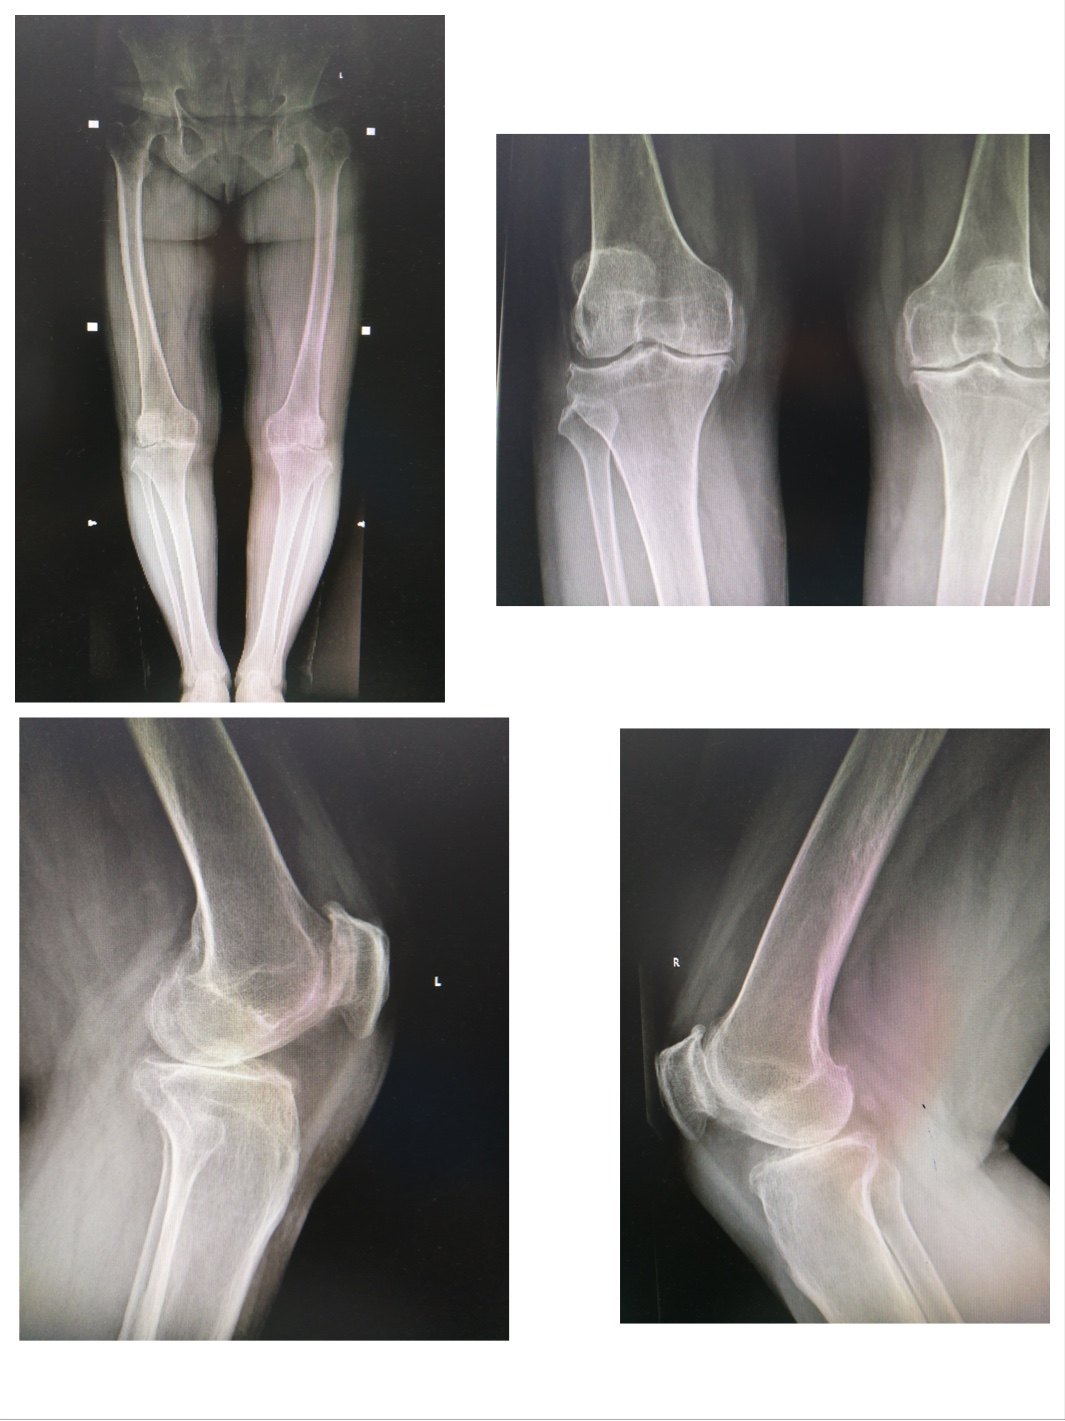 1.x线在膝关节的损伤中常用的检查目的在于